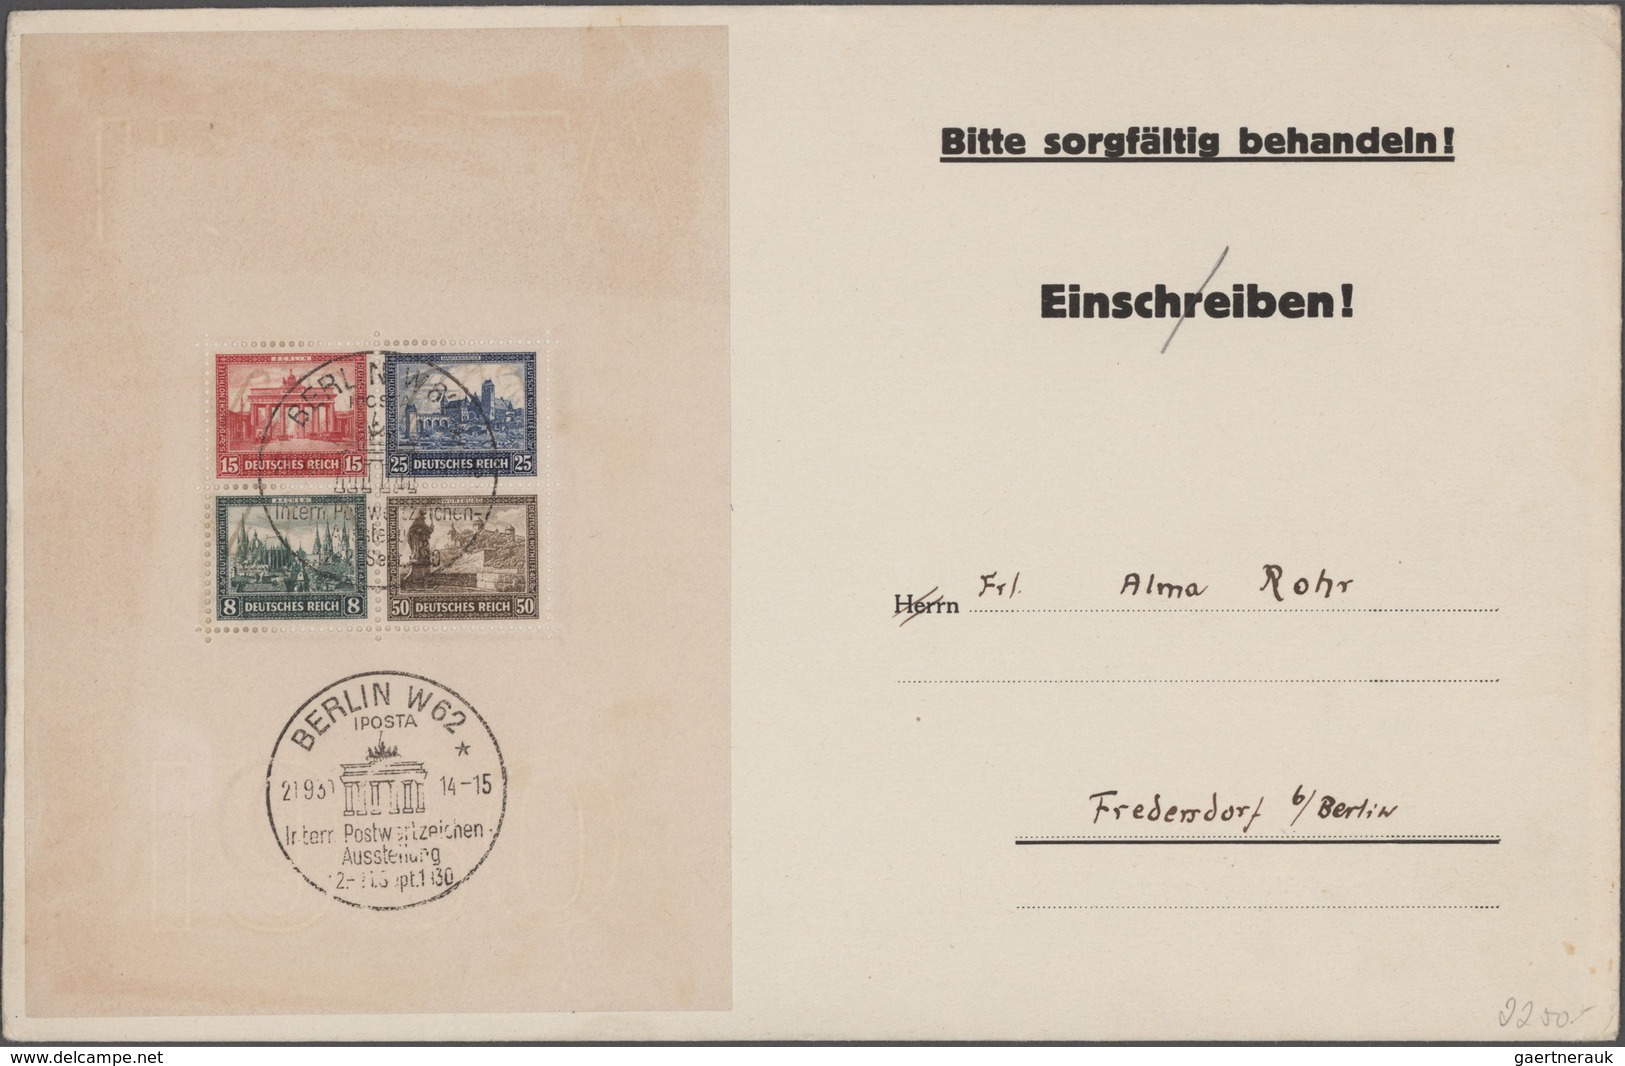 Deutschland: 1872/1977 Deutschland in 4 Alben Sehr gehaltvolle Sammlung Deutschland, mit Deutsches R